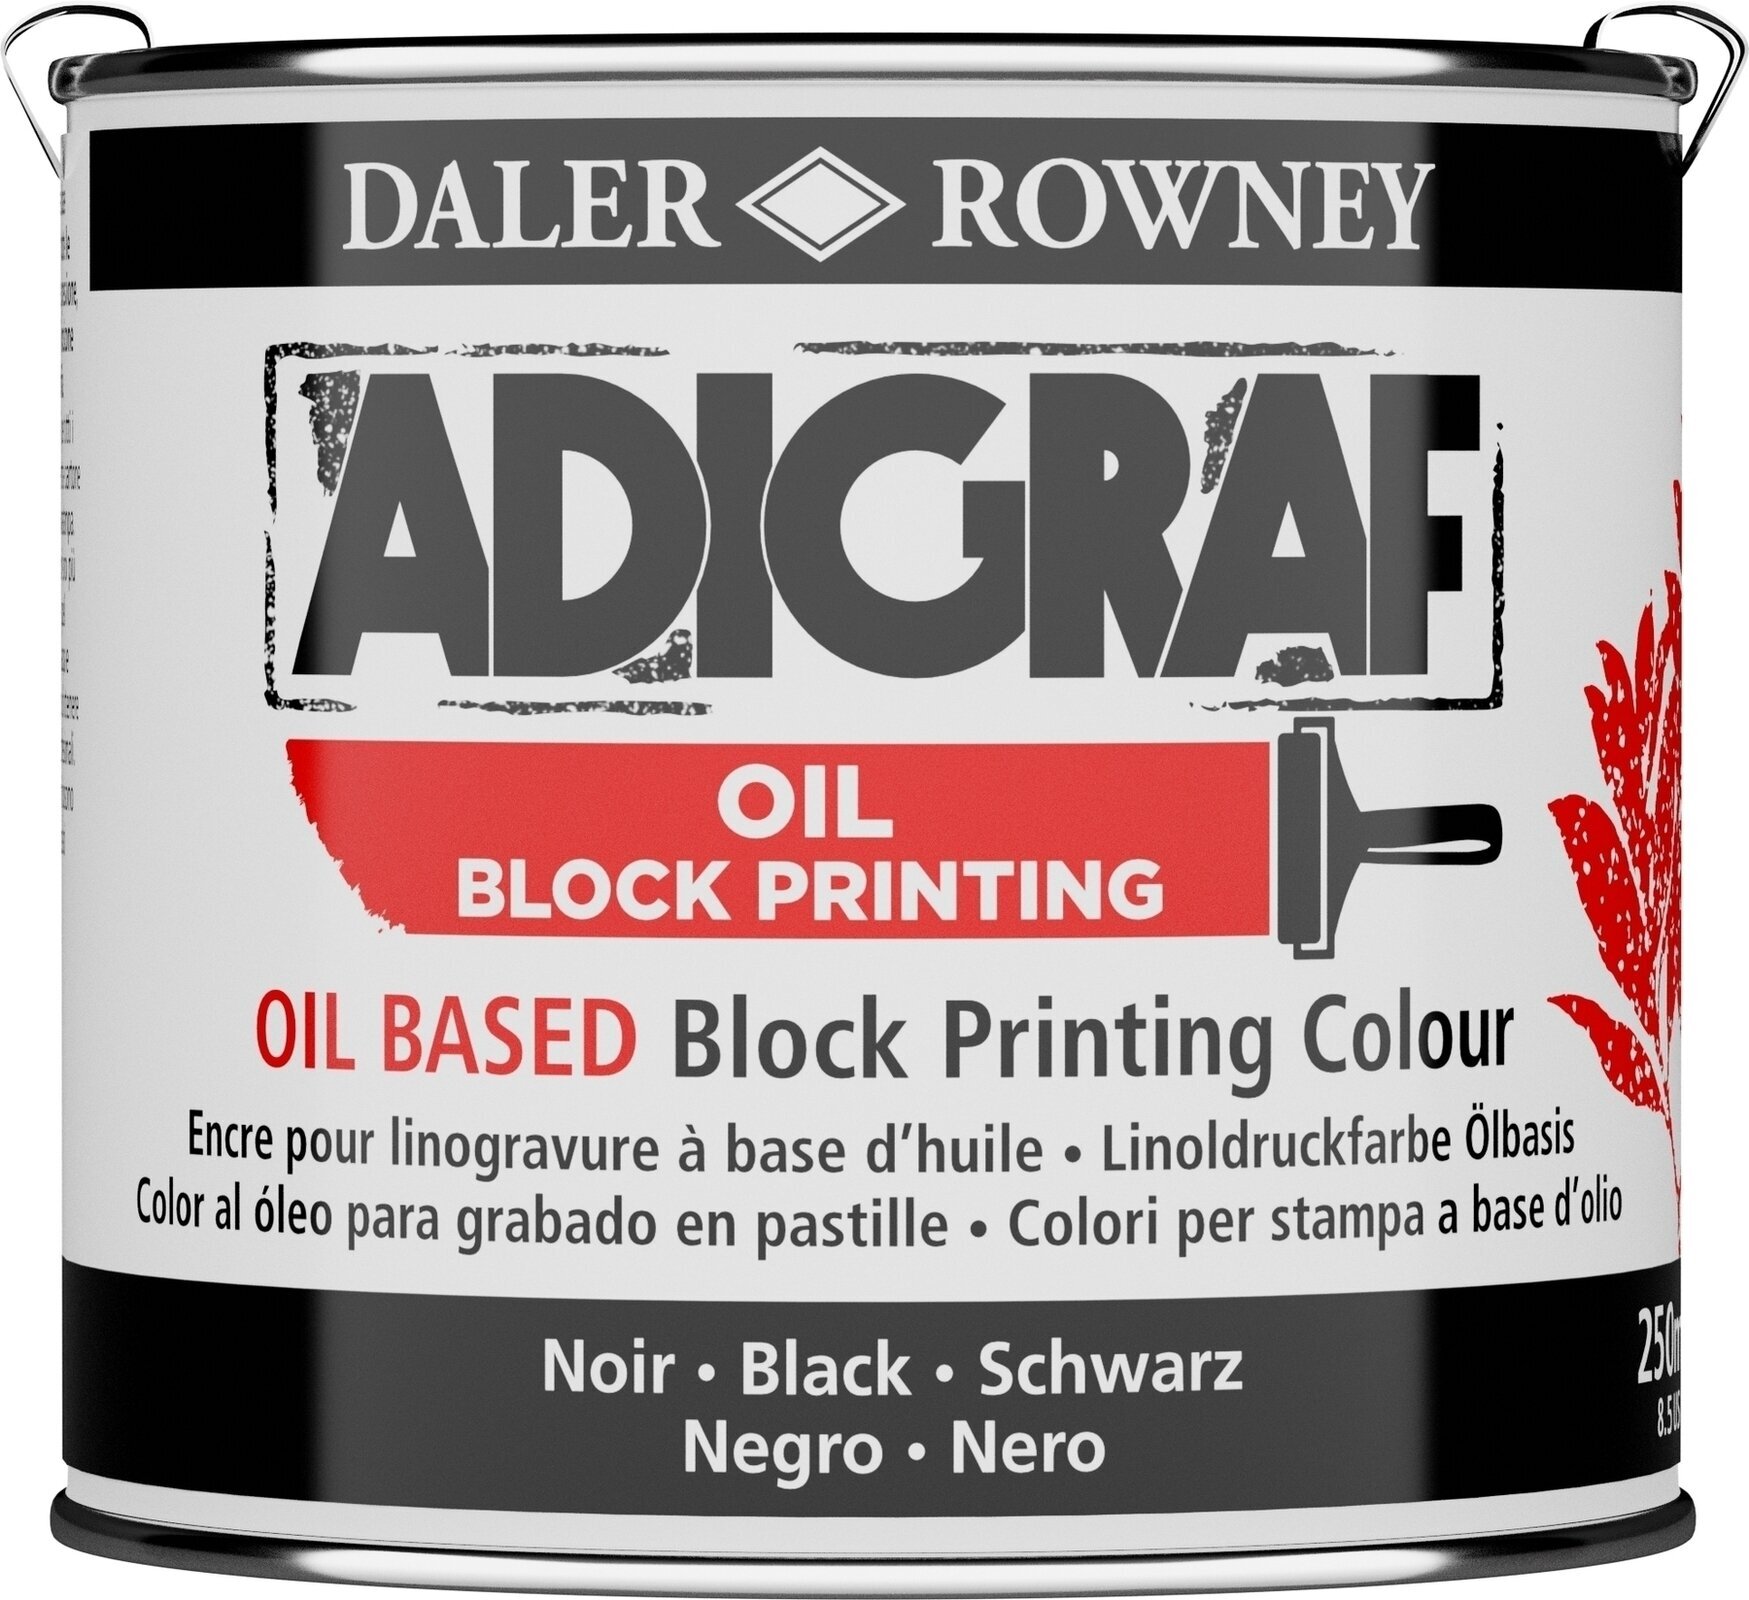 Festék linómetszethez Daler Rowney Adigraf Block Printing Oil Festék linómetszethez Black 250 ml